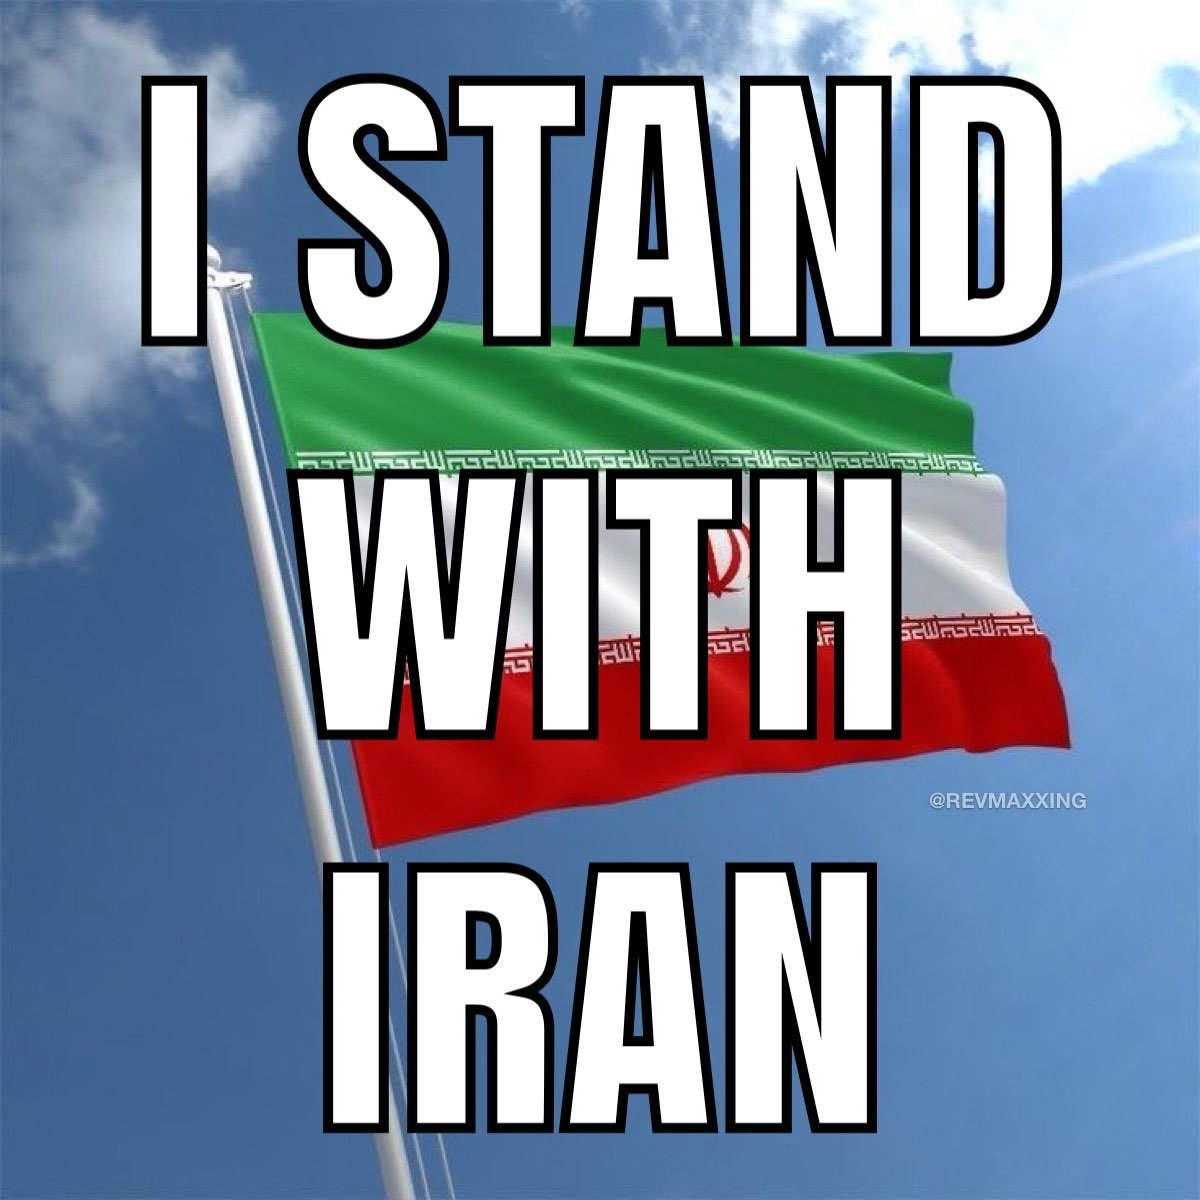 क्या आप ईरान के साथ है 🤔 #Iran